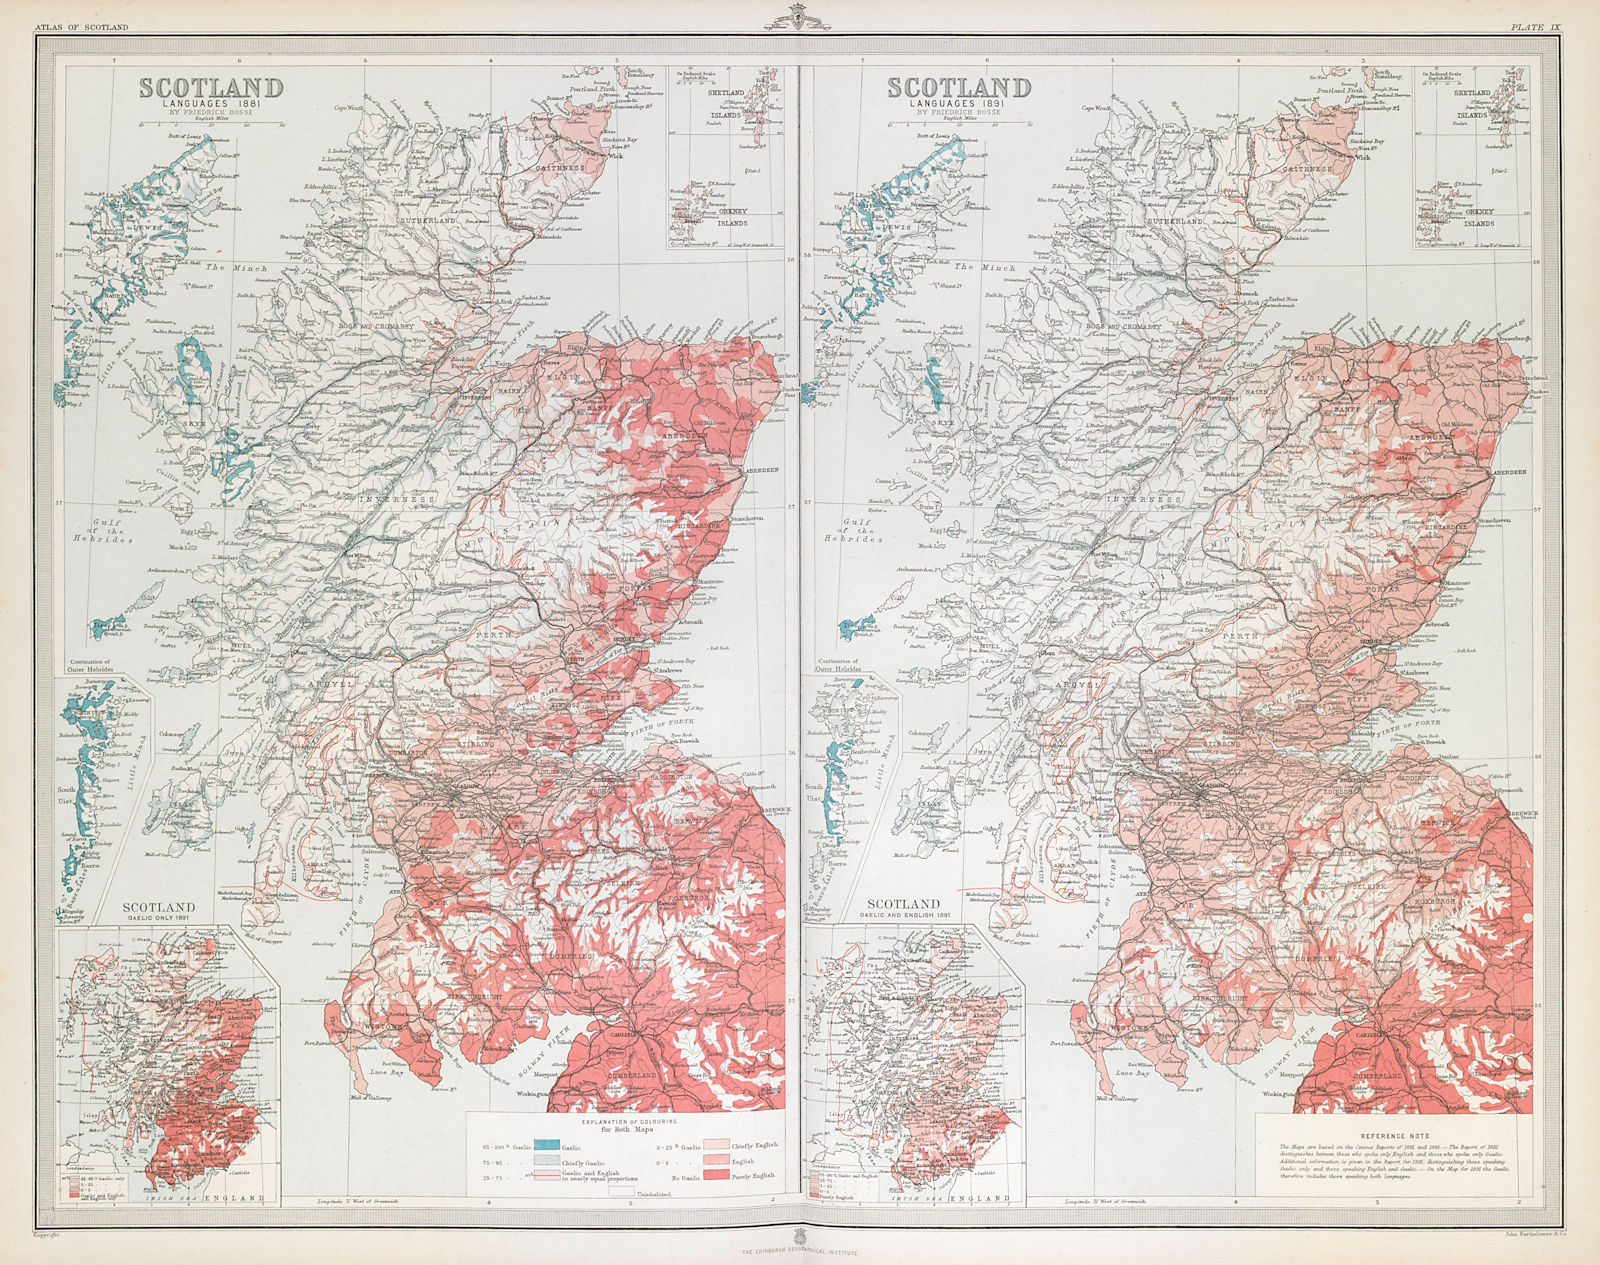 SCOTLAND Languages 1881 & 1891. Gaelic & English. LARGE 1895 old antique map